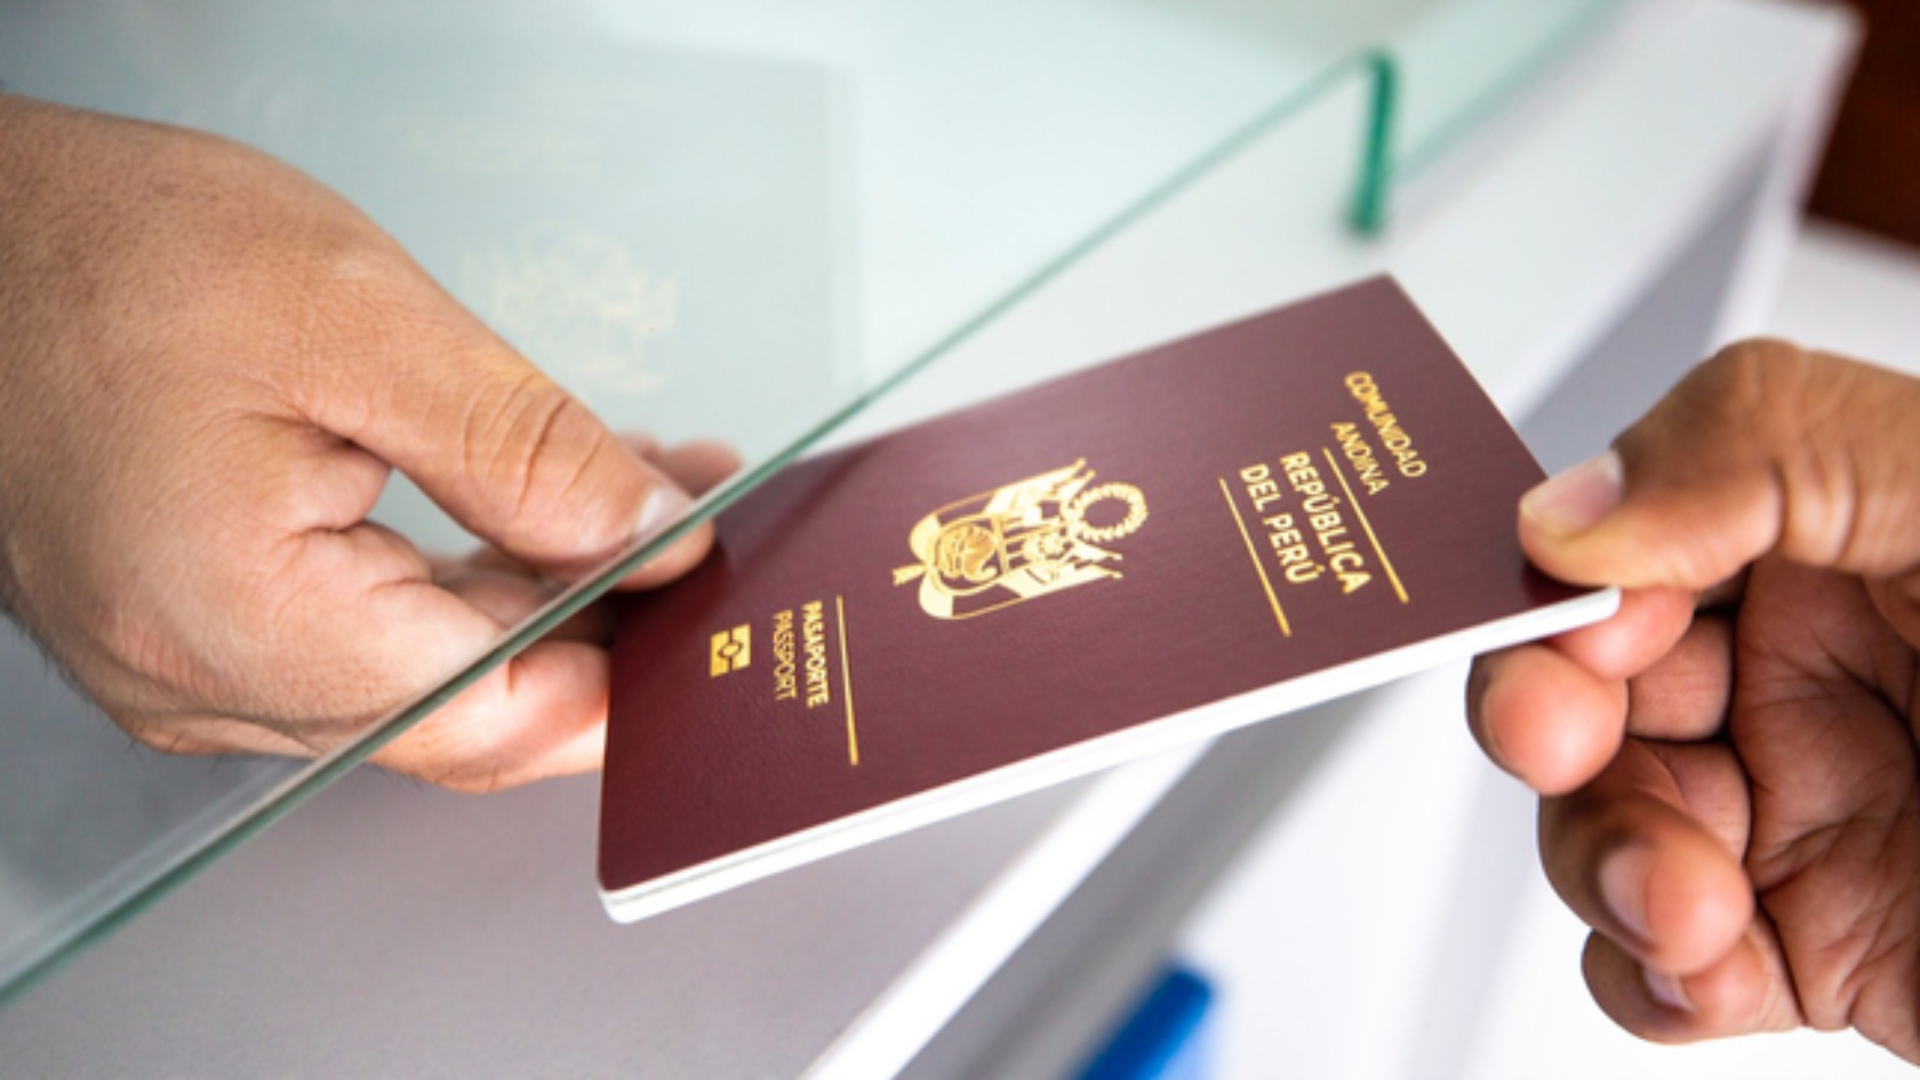 ¿Quieres salir del país? Obtén tu pasaporte electrónico con estos simples pasos